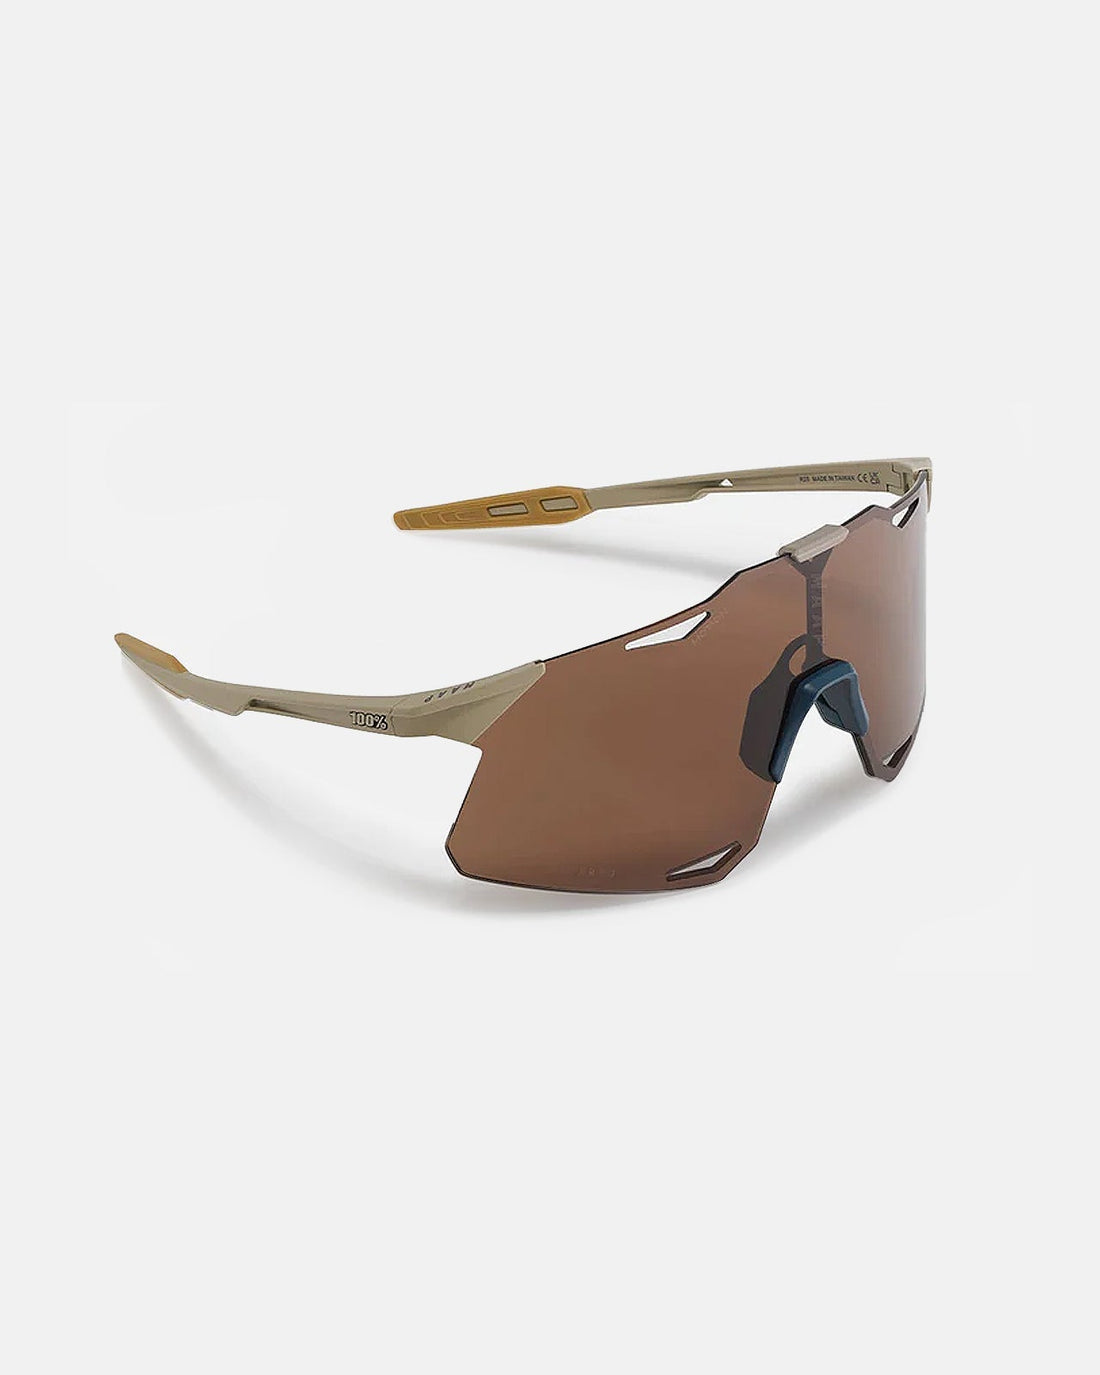 MAAP x 100% Hypercraft Sunglasses - Bone - MAAP